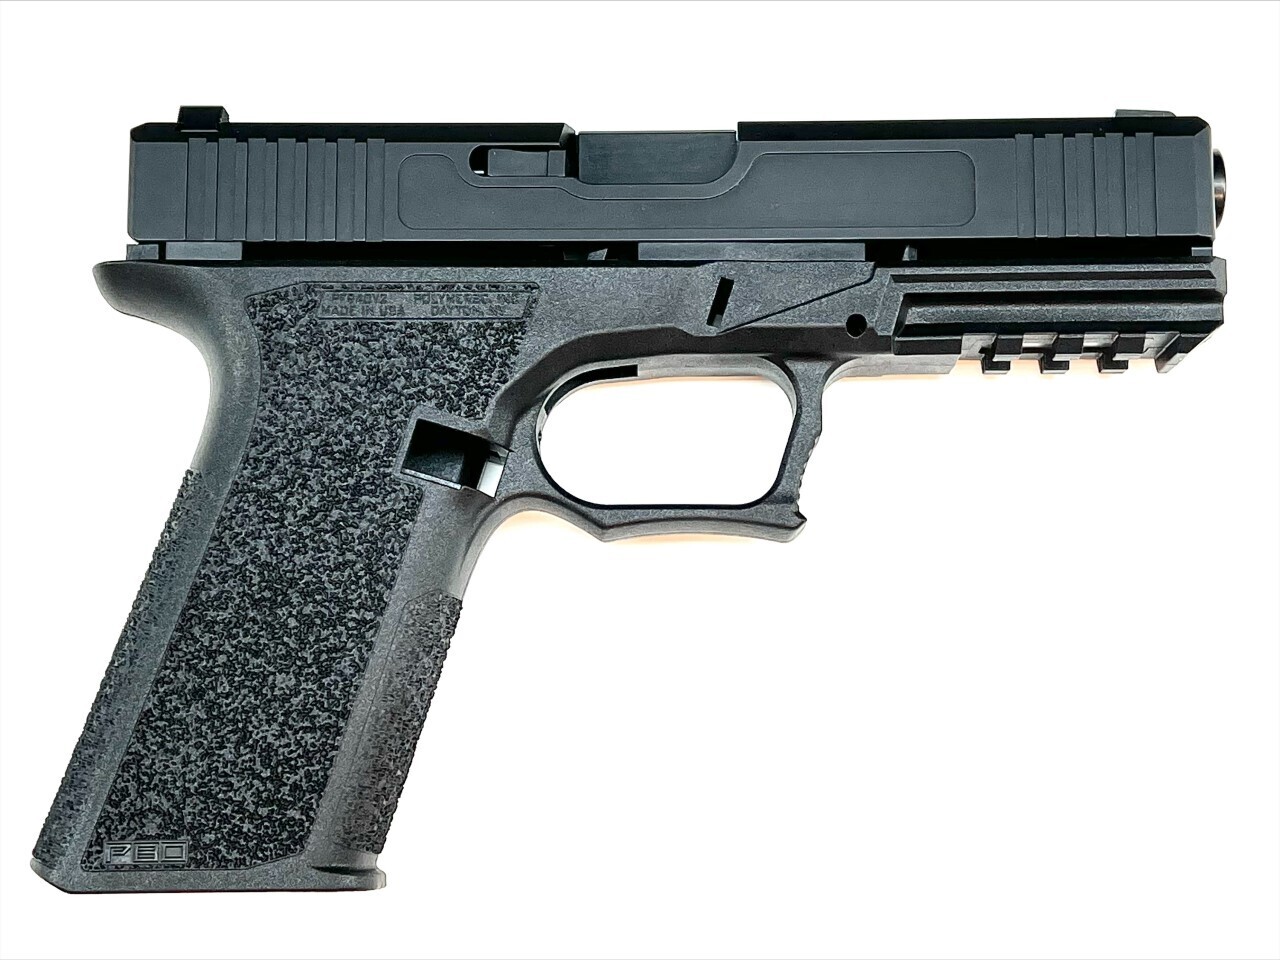 Patriot PF940V2 80% G17 Pistol Parts Kit 9mm - Black